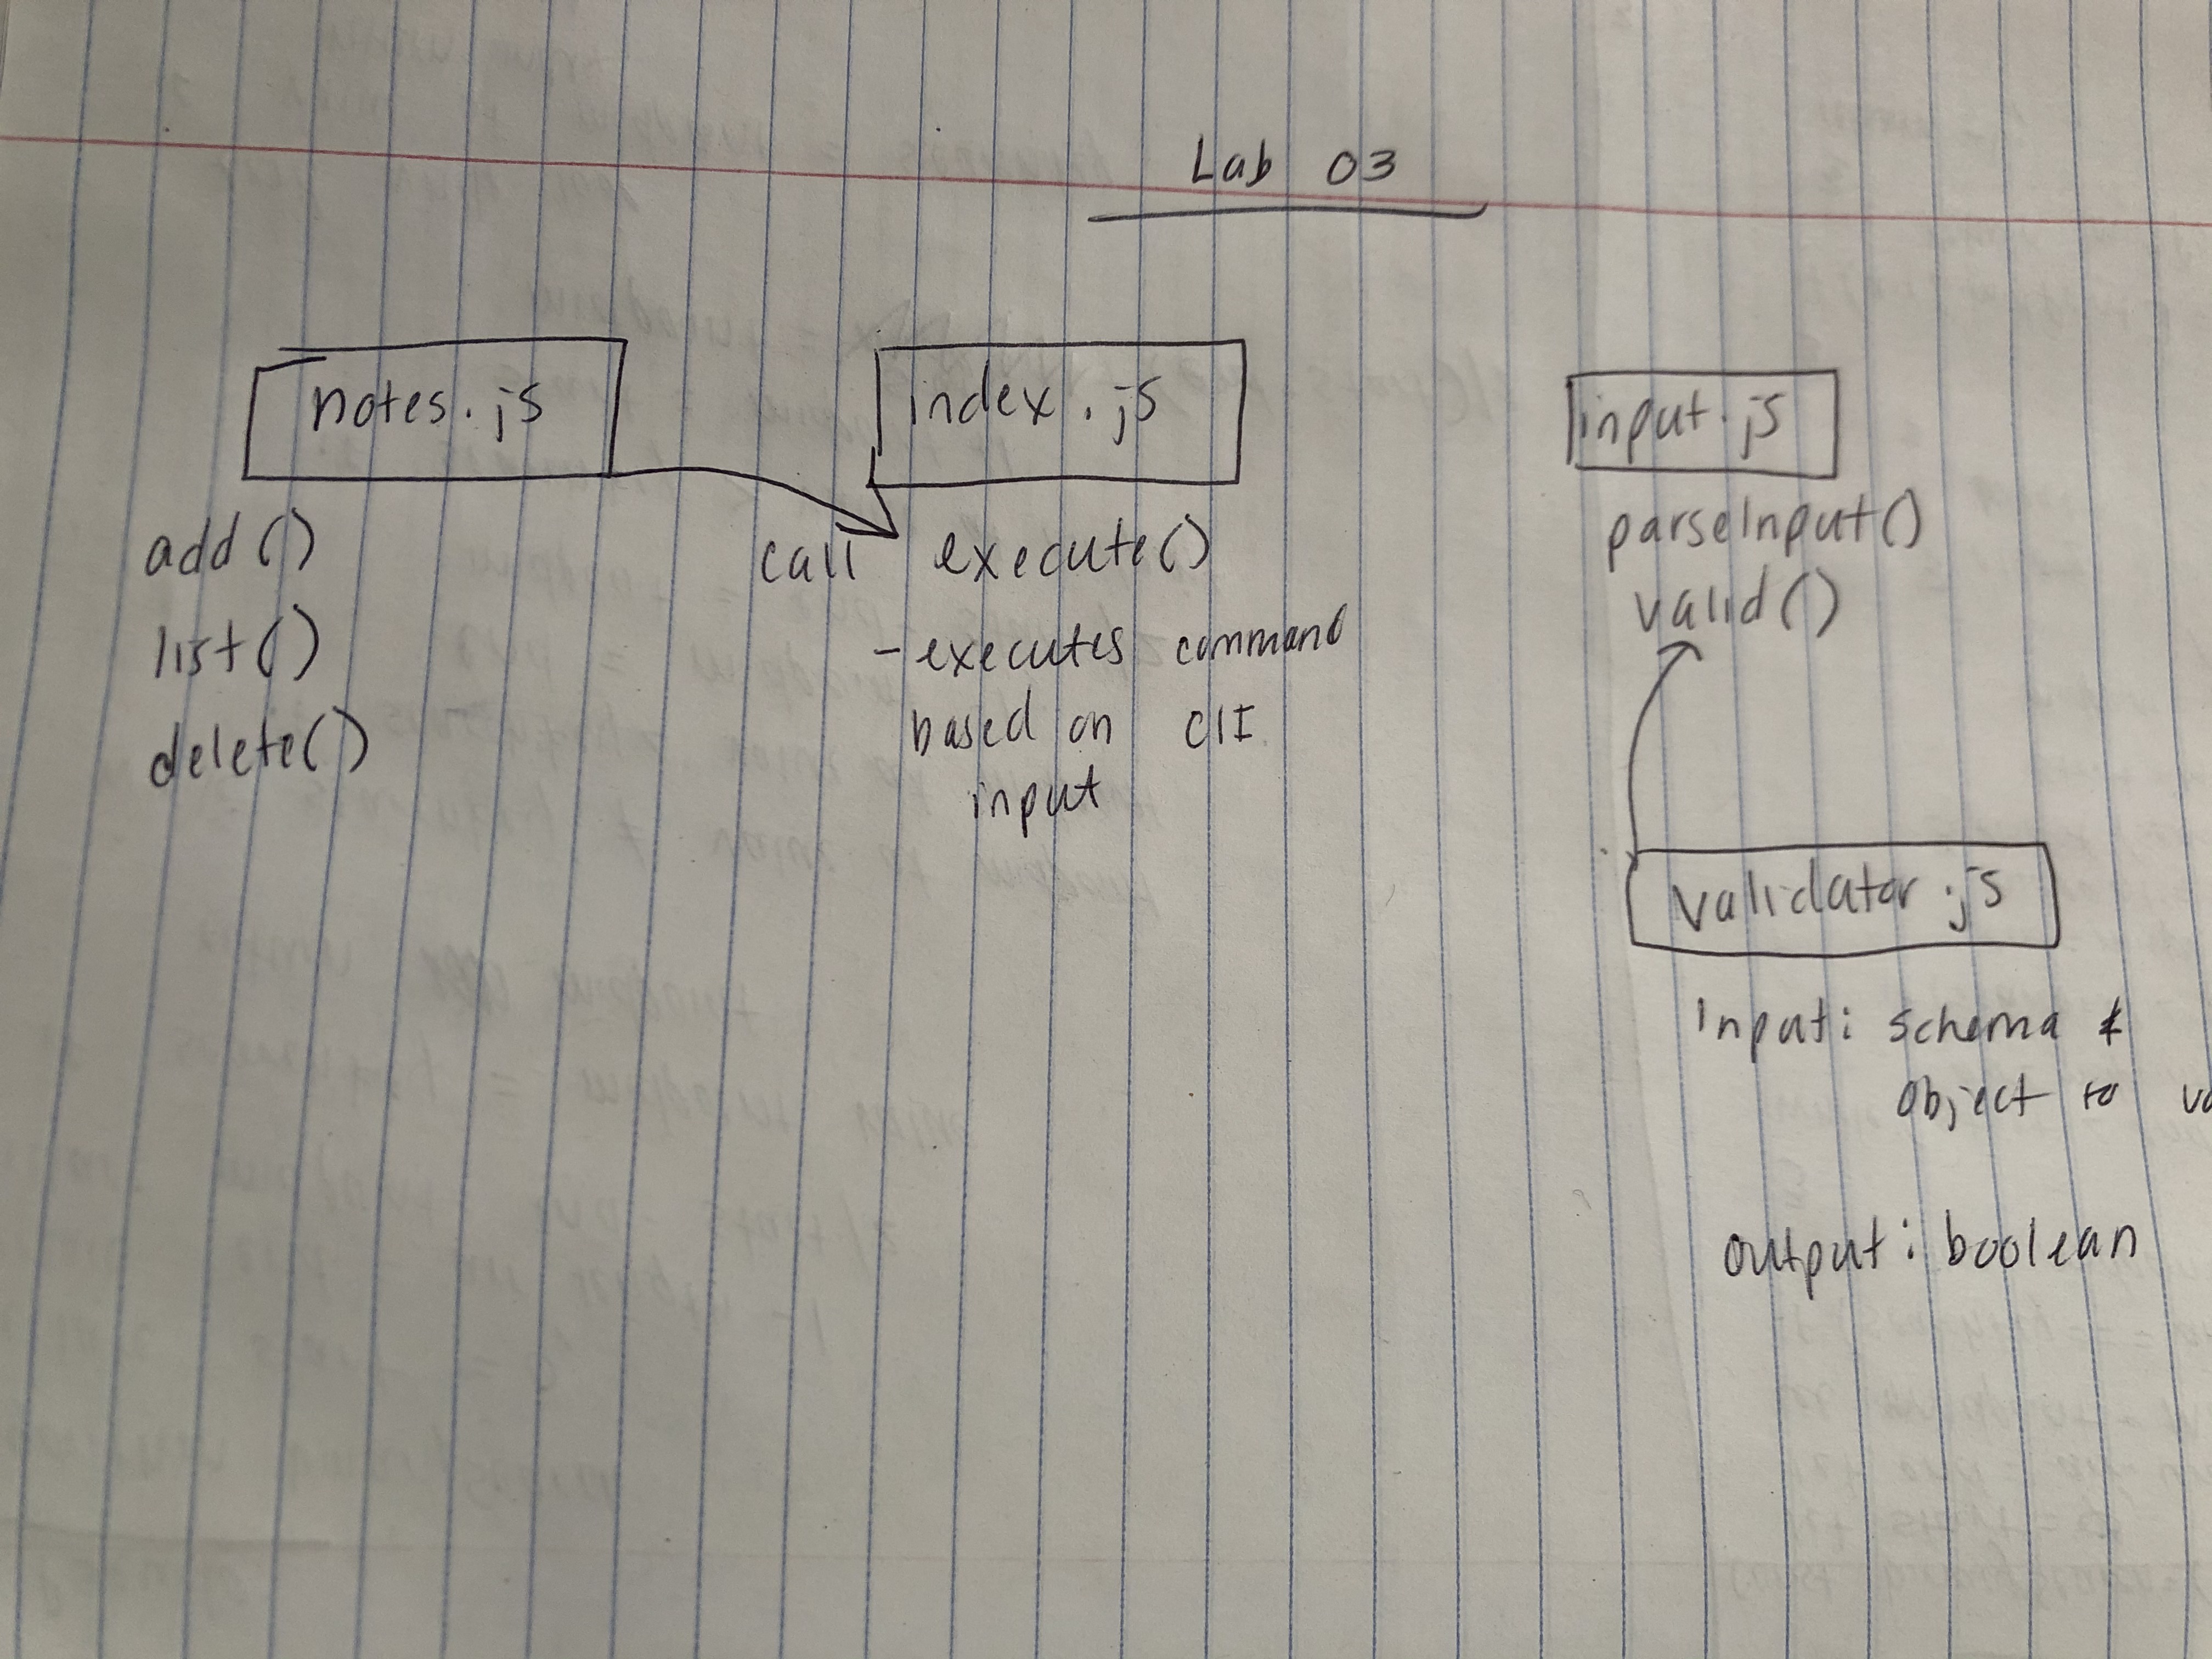 Lab 03 UML Diagram